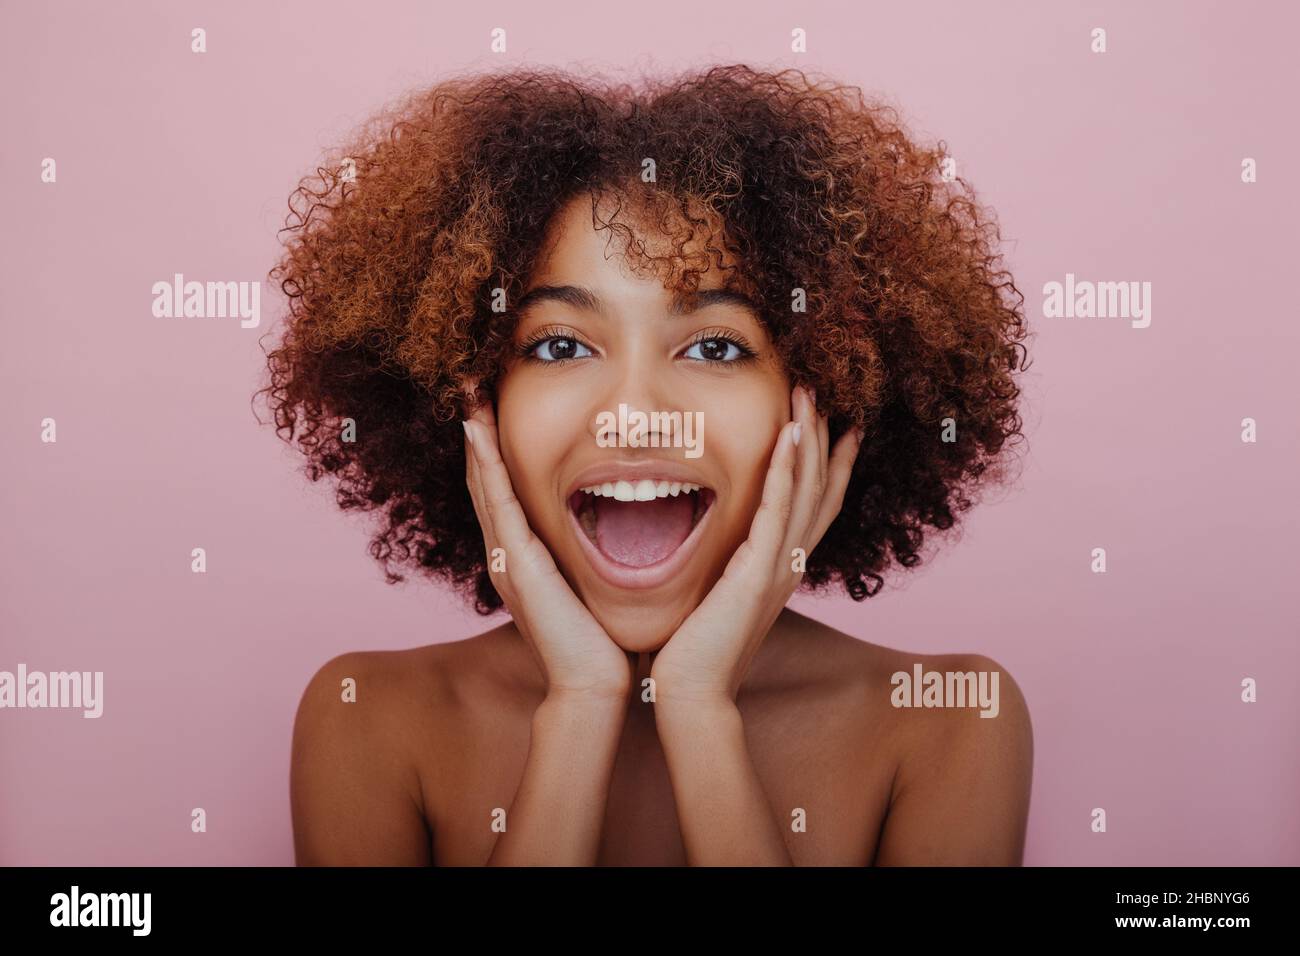 Portrait d'une jeune femme à la peau sombre agréablement surpris avec des cheveux bouclés luxuriants regardant dans l'appareil photo avec sa bouche ouverte et son visage dans les mains sur un fond rose souriant Banque D'Images